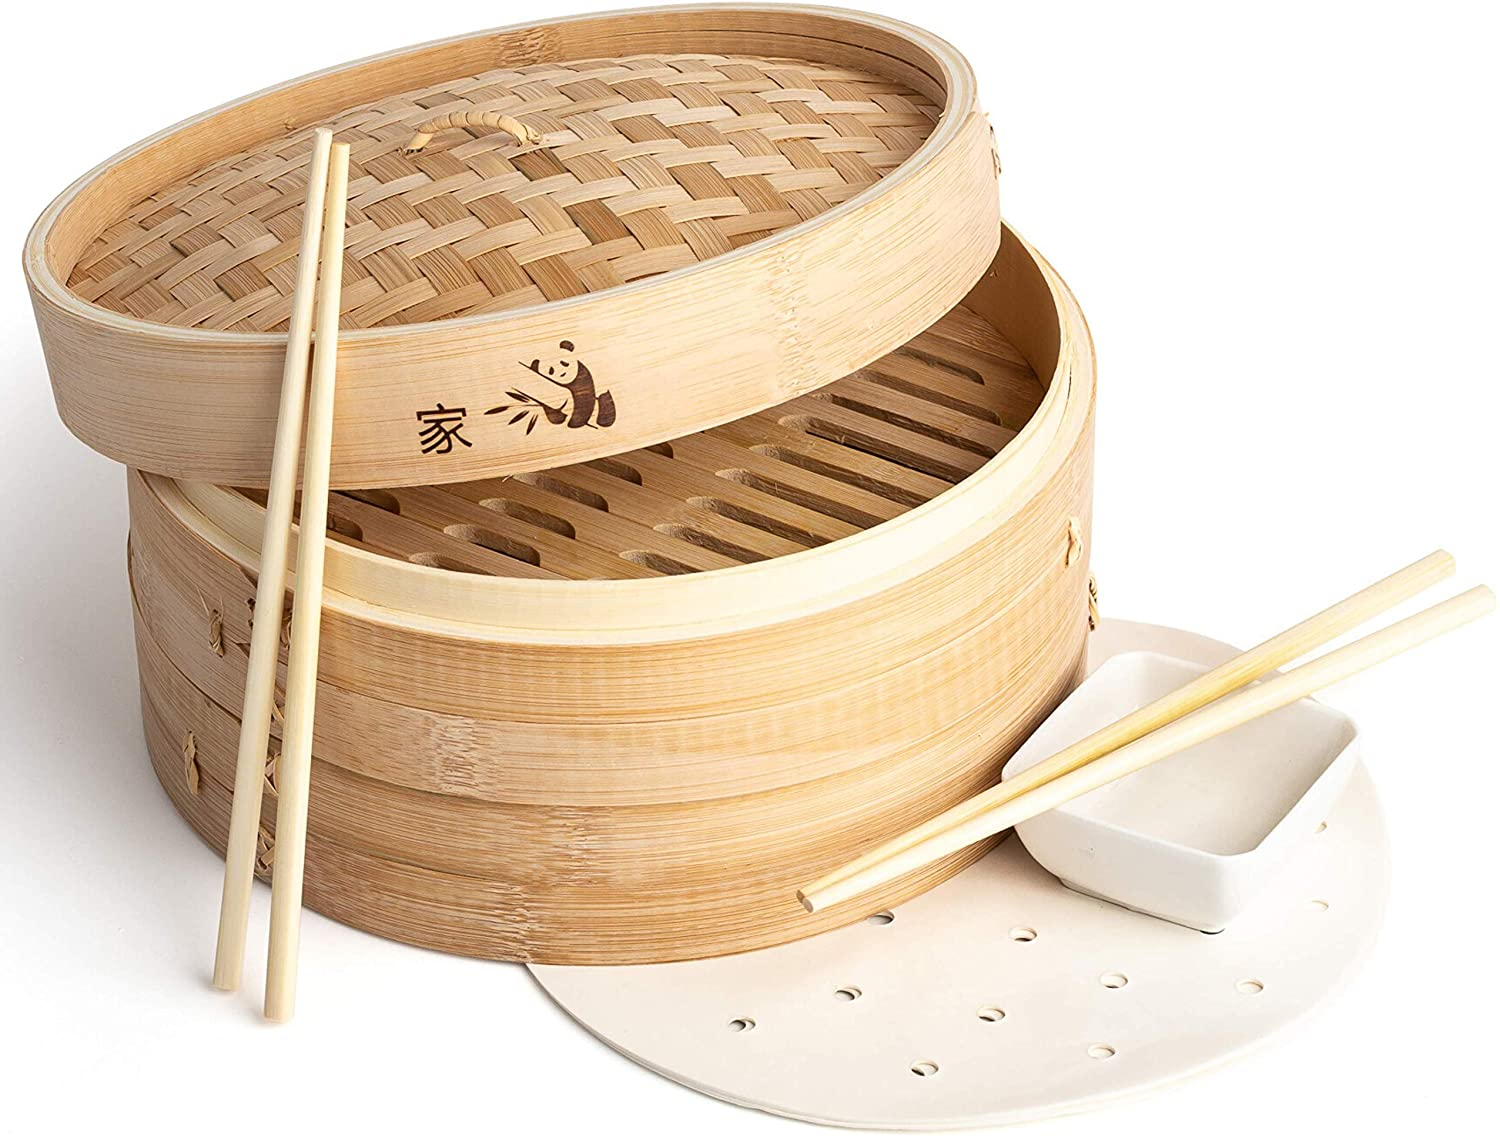  Bamboo Steamer Basket 10 Inch Or 12 inch- Dumpling Maker, Vegetable Steamer- 2 Sets of Chopsticks, 1 Sauce Dish & 50 Liners 